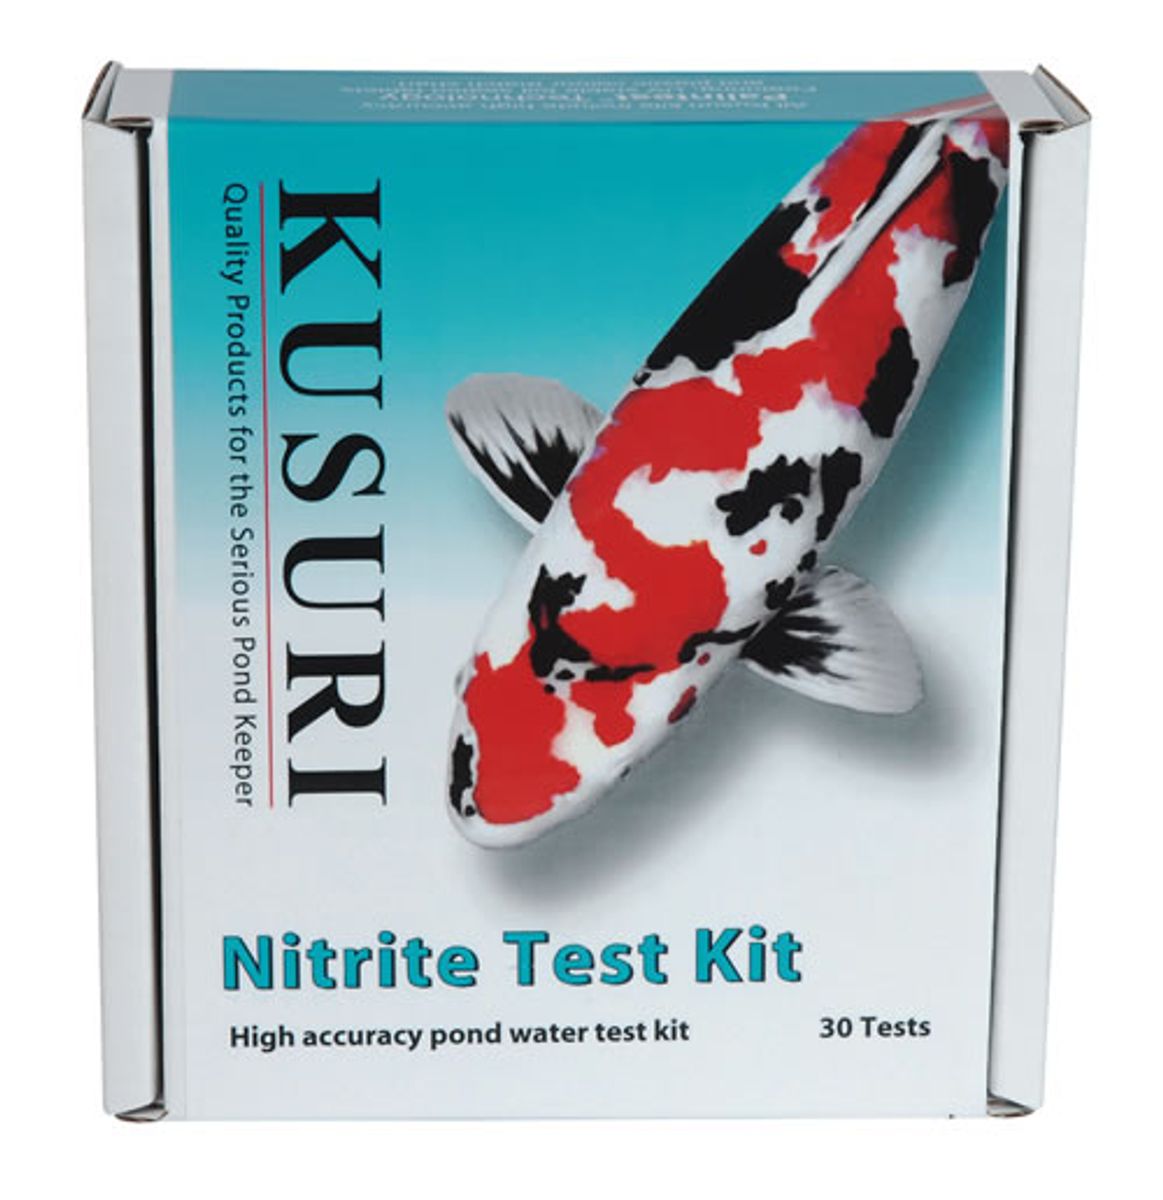 https://cdn.toppy.nl/g/catalog/product/5514/1200f1200/nitrite-test-kit.jpg